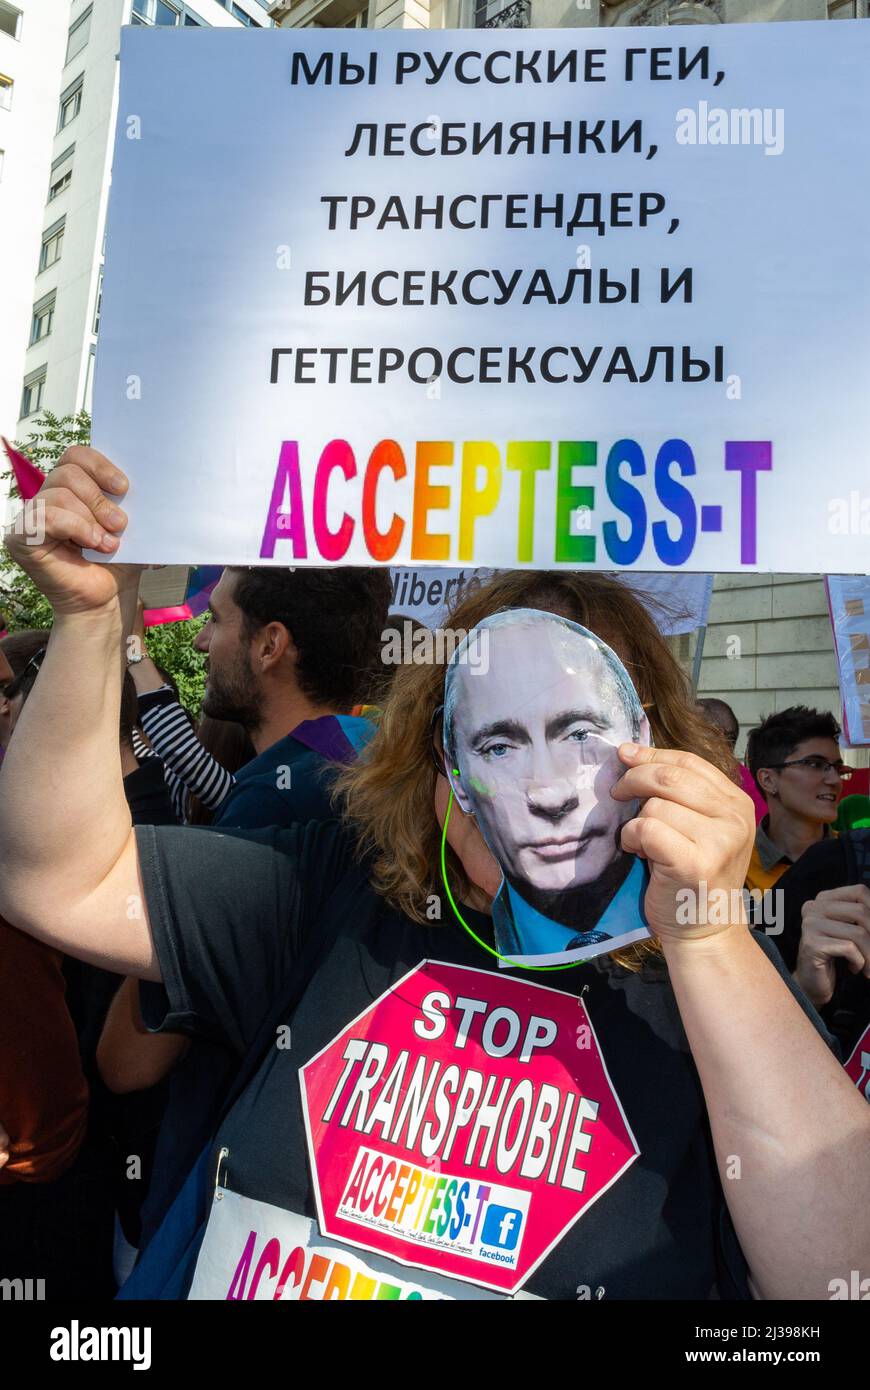 В Одессе любят отдыхать транссексуалы (ФОТО)